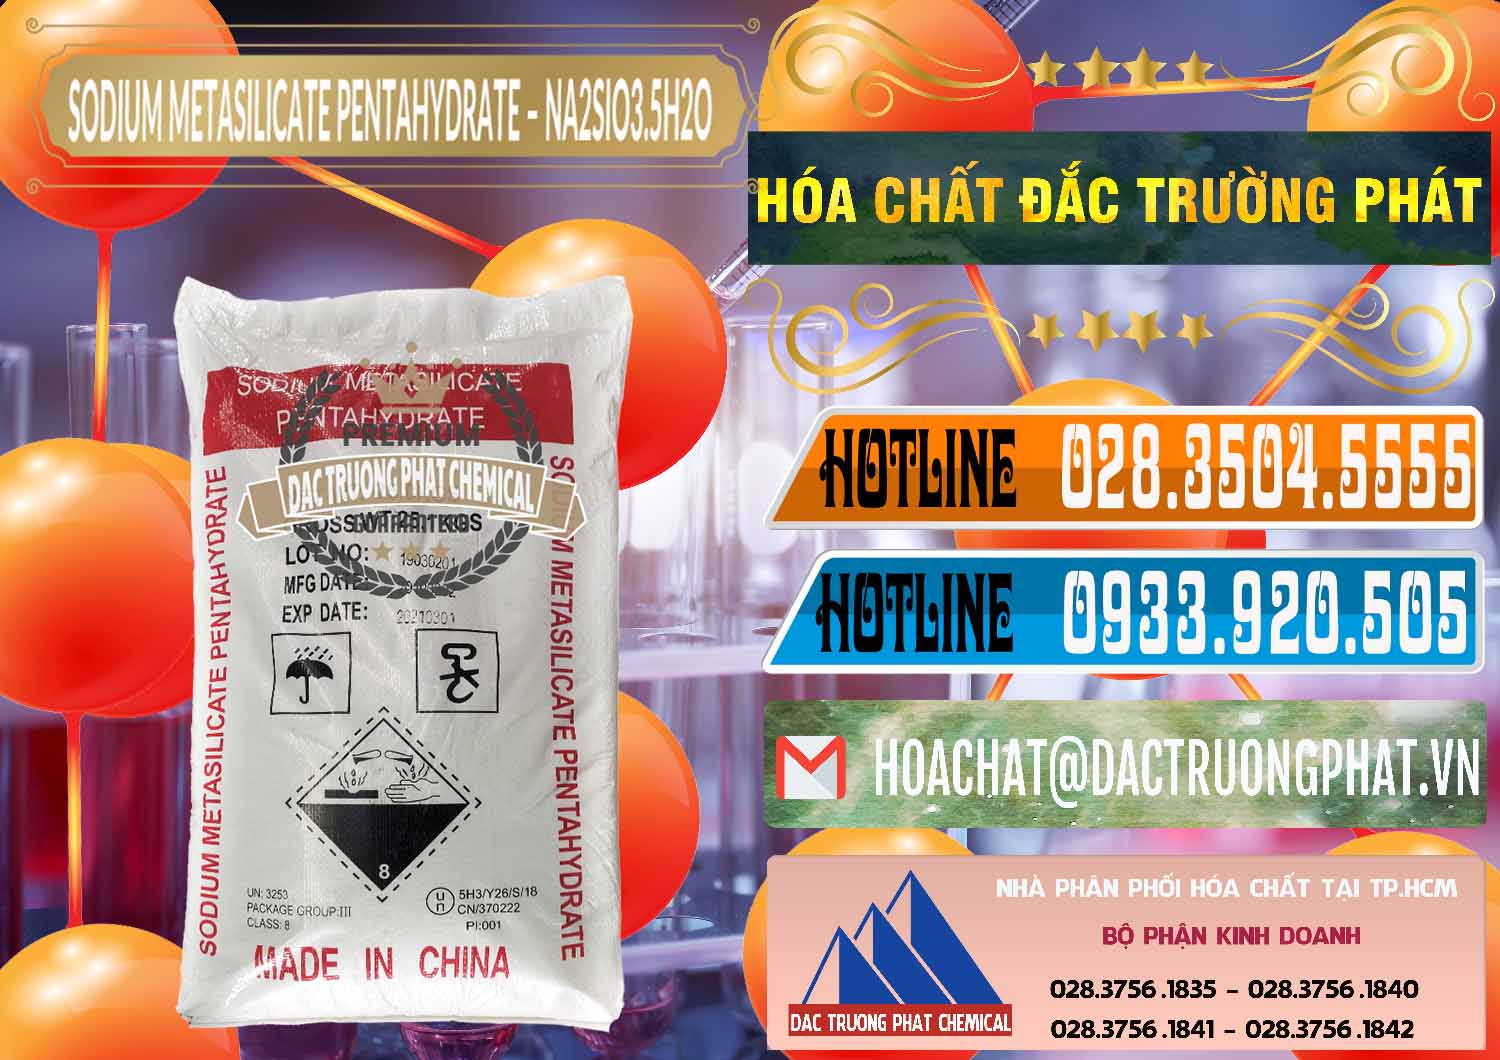 Đơn vị chuyên bán - phân phối Sodium Metasilicate Pentahydrate – Silicate Bột Trung Quốc China - 0147 - Cty chuyên cung cấp _ bán hóa chất tại TP.HCM - stmp.net